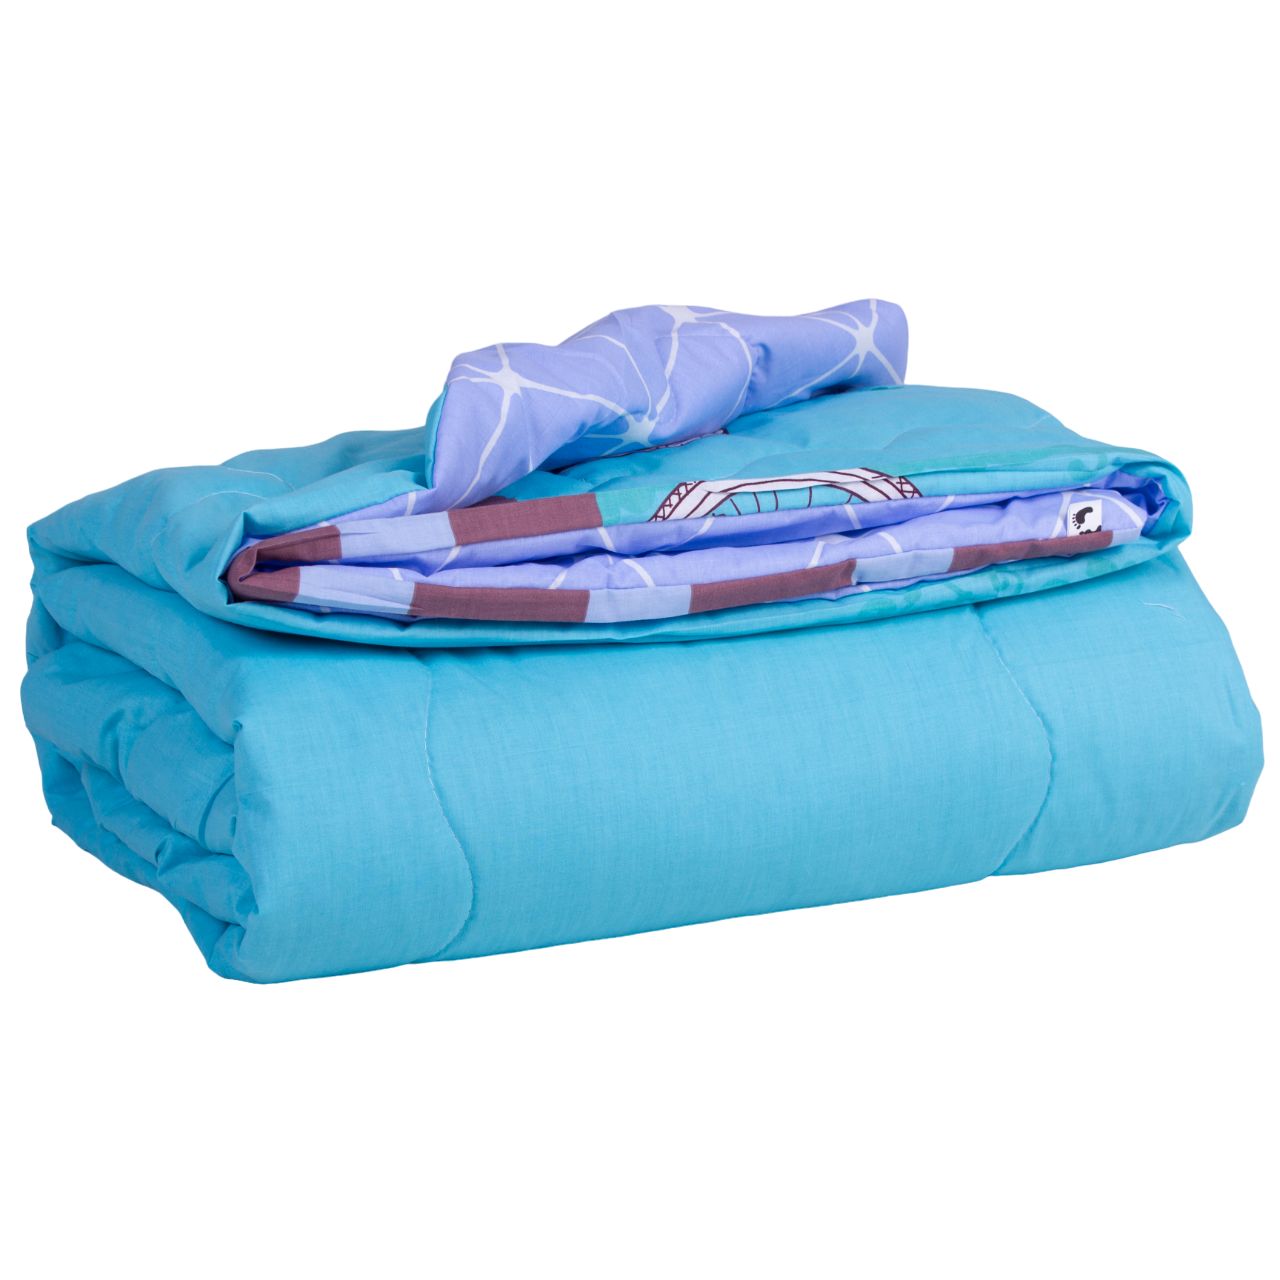 Одеяло хлопковое MirSon Летнее №2812 Сolor Fun Line Alta, полуторное, 215х155 см, голубое (2200006685647) - фото 2